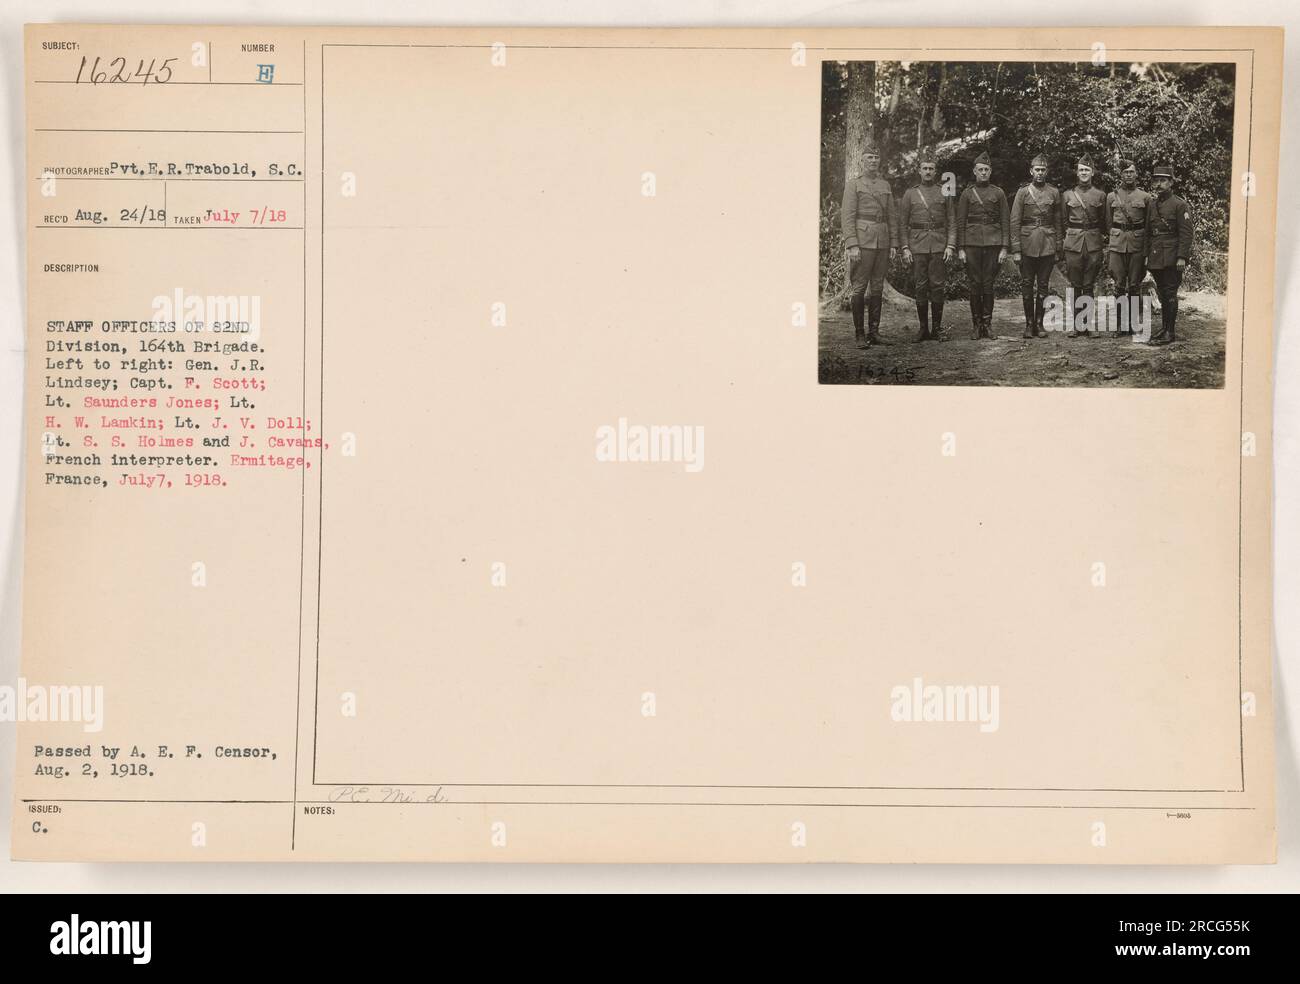 Stabsoffiziere der 82. Division, 164. Brigade, sind auf diesem Foto abgebildet, das am 7. Juli 1918 in Ermitage, Frankreich, aufgenommen wurde. Von links nach rechts: General J.R. Lindsey, Captain P. Scott, Leutnant Saunders Jones, Leutnant C. H. W. Lamkin, Leutnant J. V. Doll, Leutnant S. S. Holmes und J. Cavans, französischer Dolmetscher. Das Foto wurde von Pvt. E. R. Trabold aufgenommen und am 24. August 1918 empfangen und am 2. August 1918 vom A. E. P. Censor genehmigt. Stockfoto